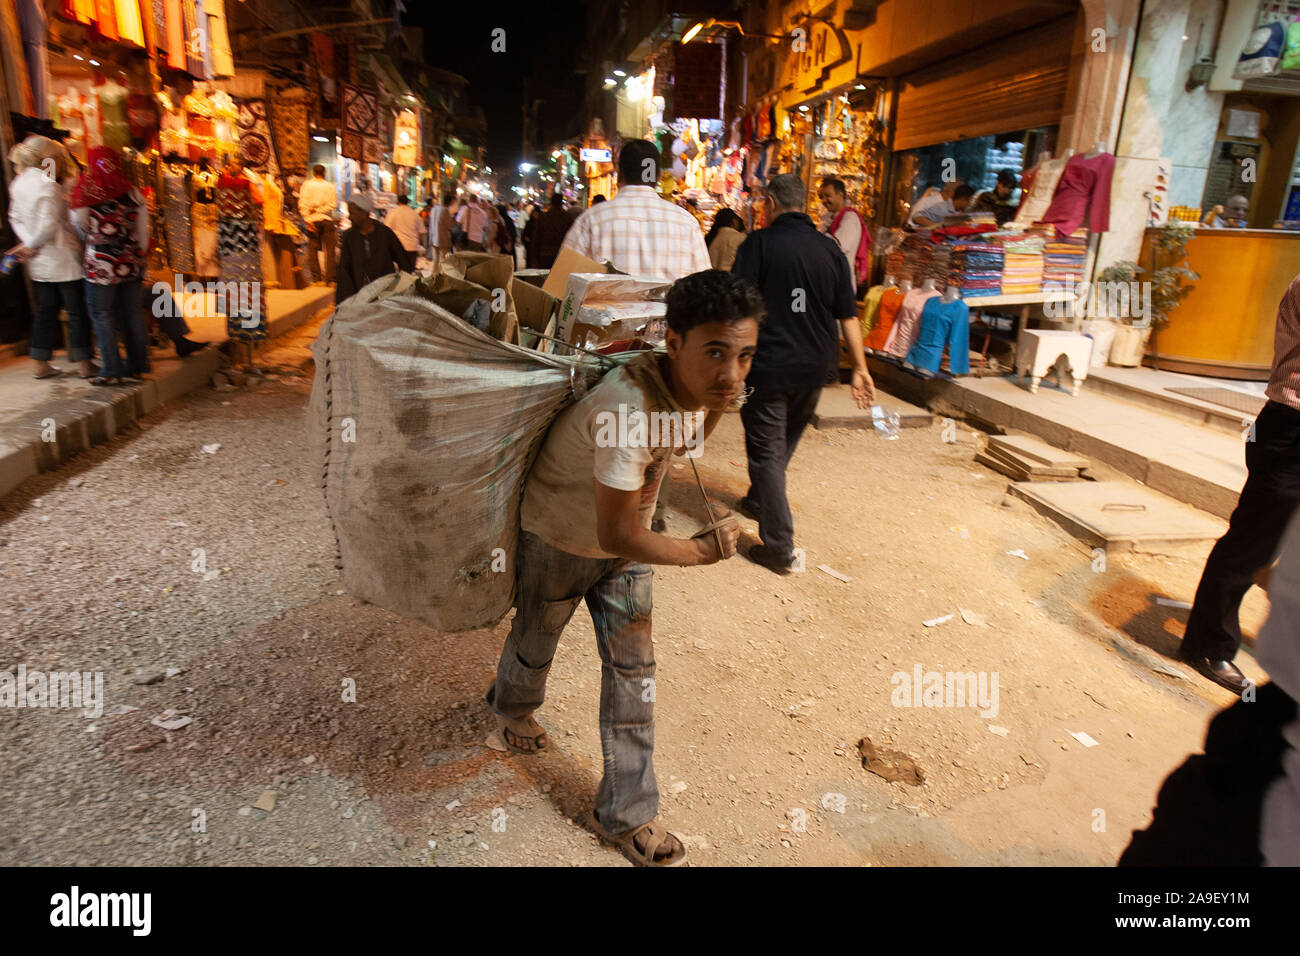 El Cairo, Egipto, 2 de mayo de 2008: Un niño lleva una bolsa de recogida de basura en el Bazar Khan el-Khalili en El Cairo. Foto de stock